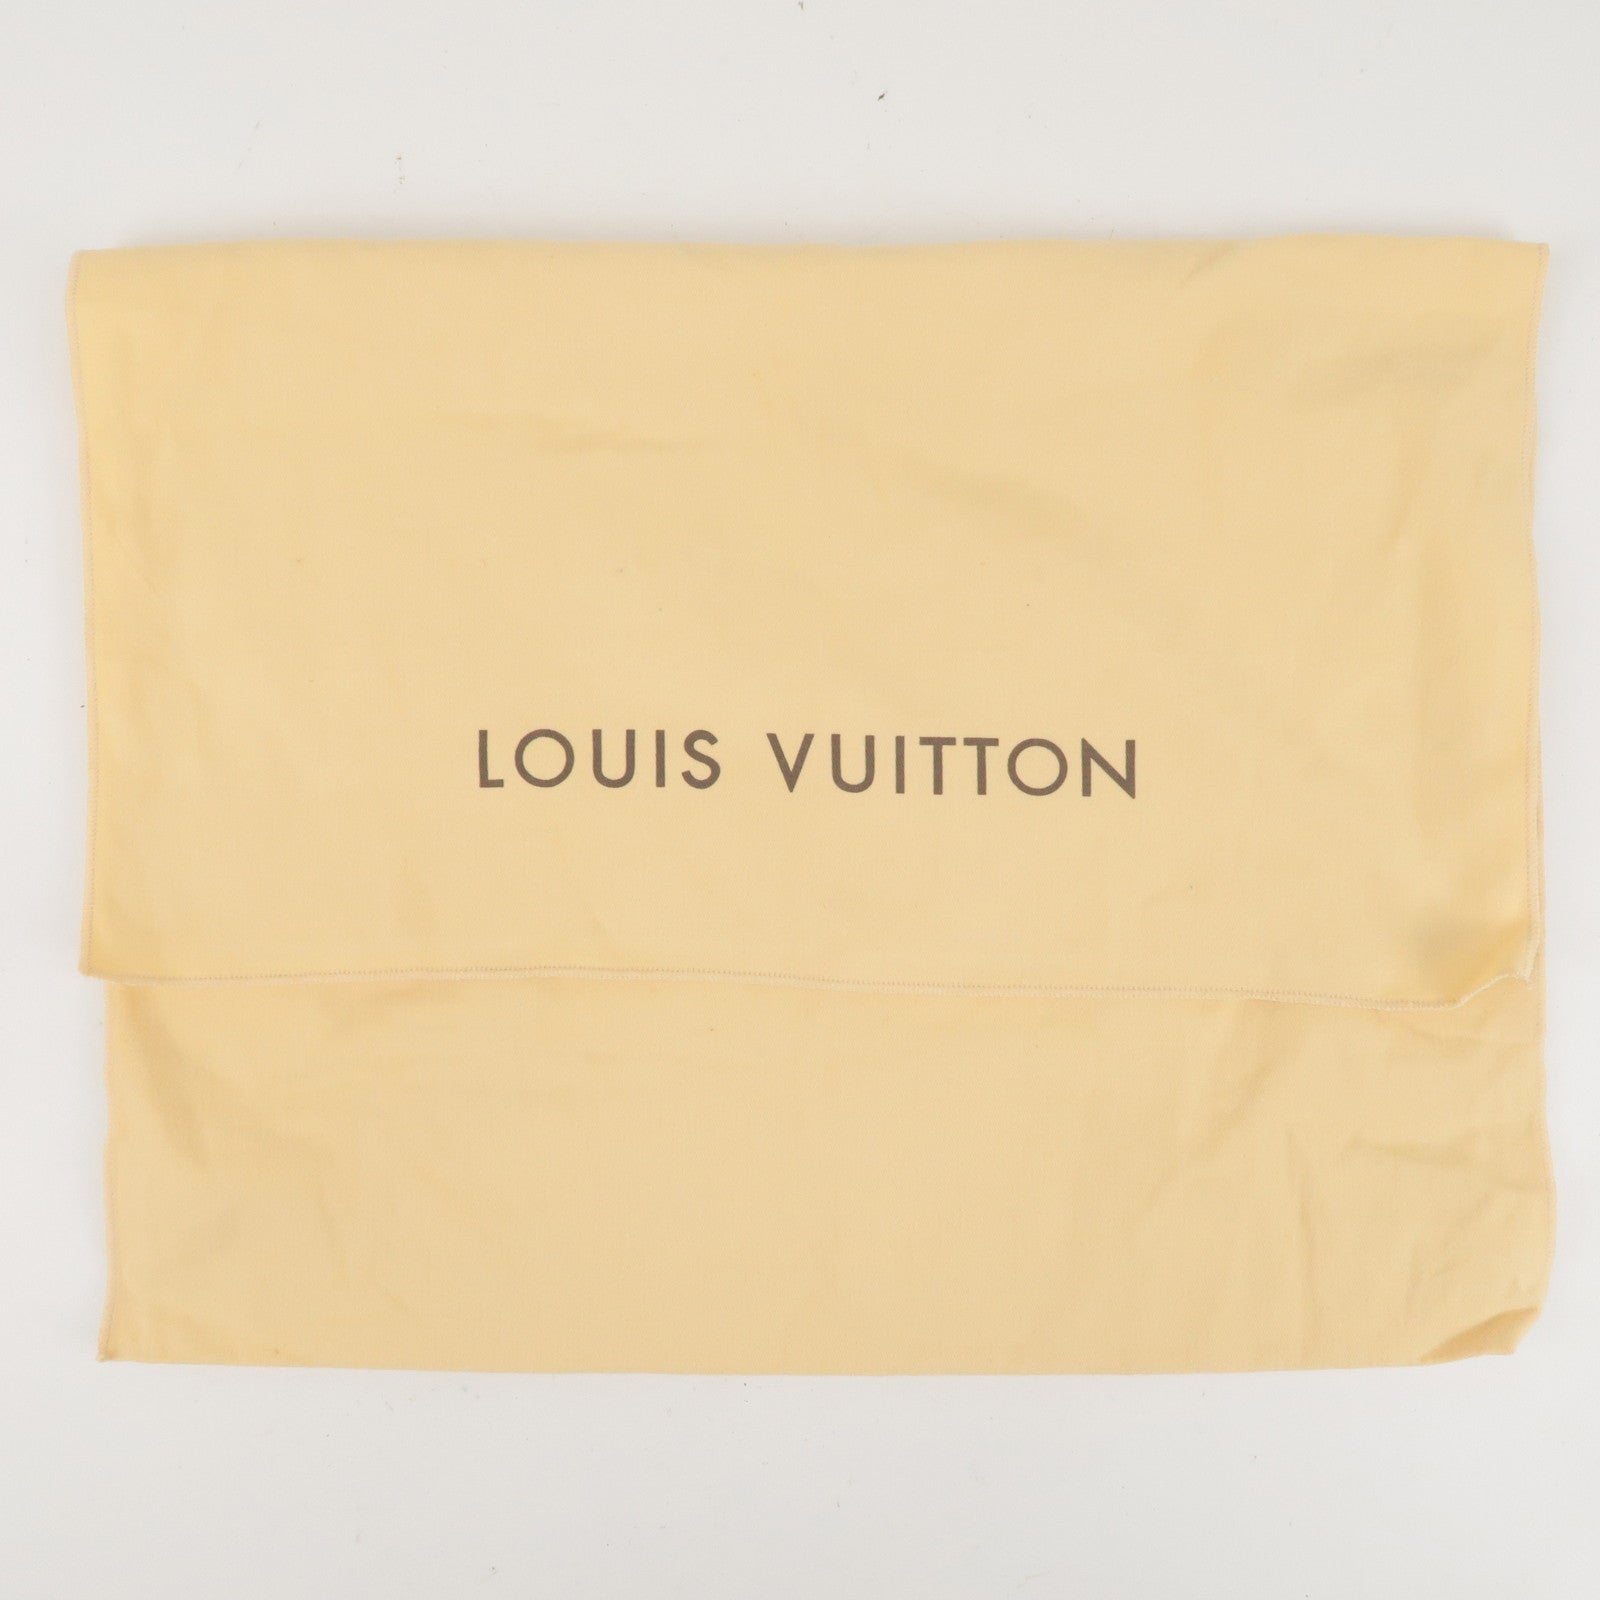 LARGE LOT of Louis Vuitton Authentic Empty Dust bag